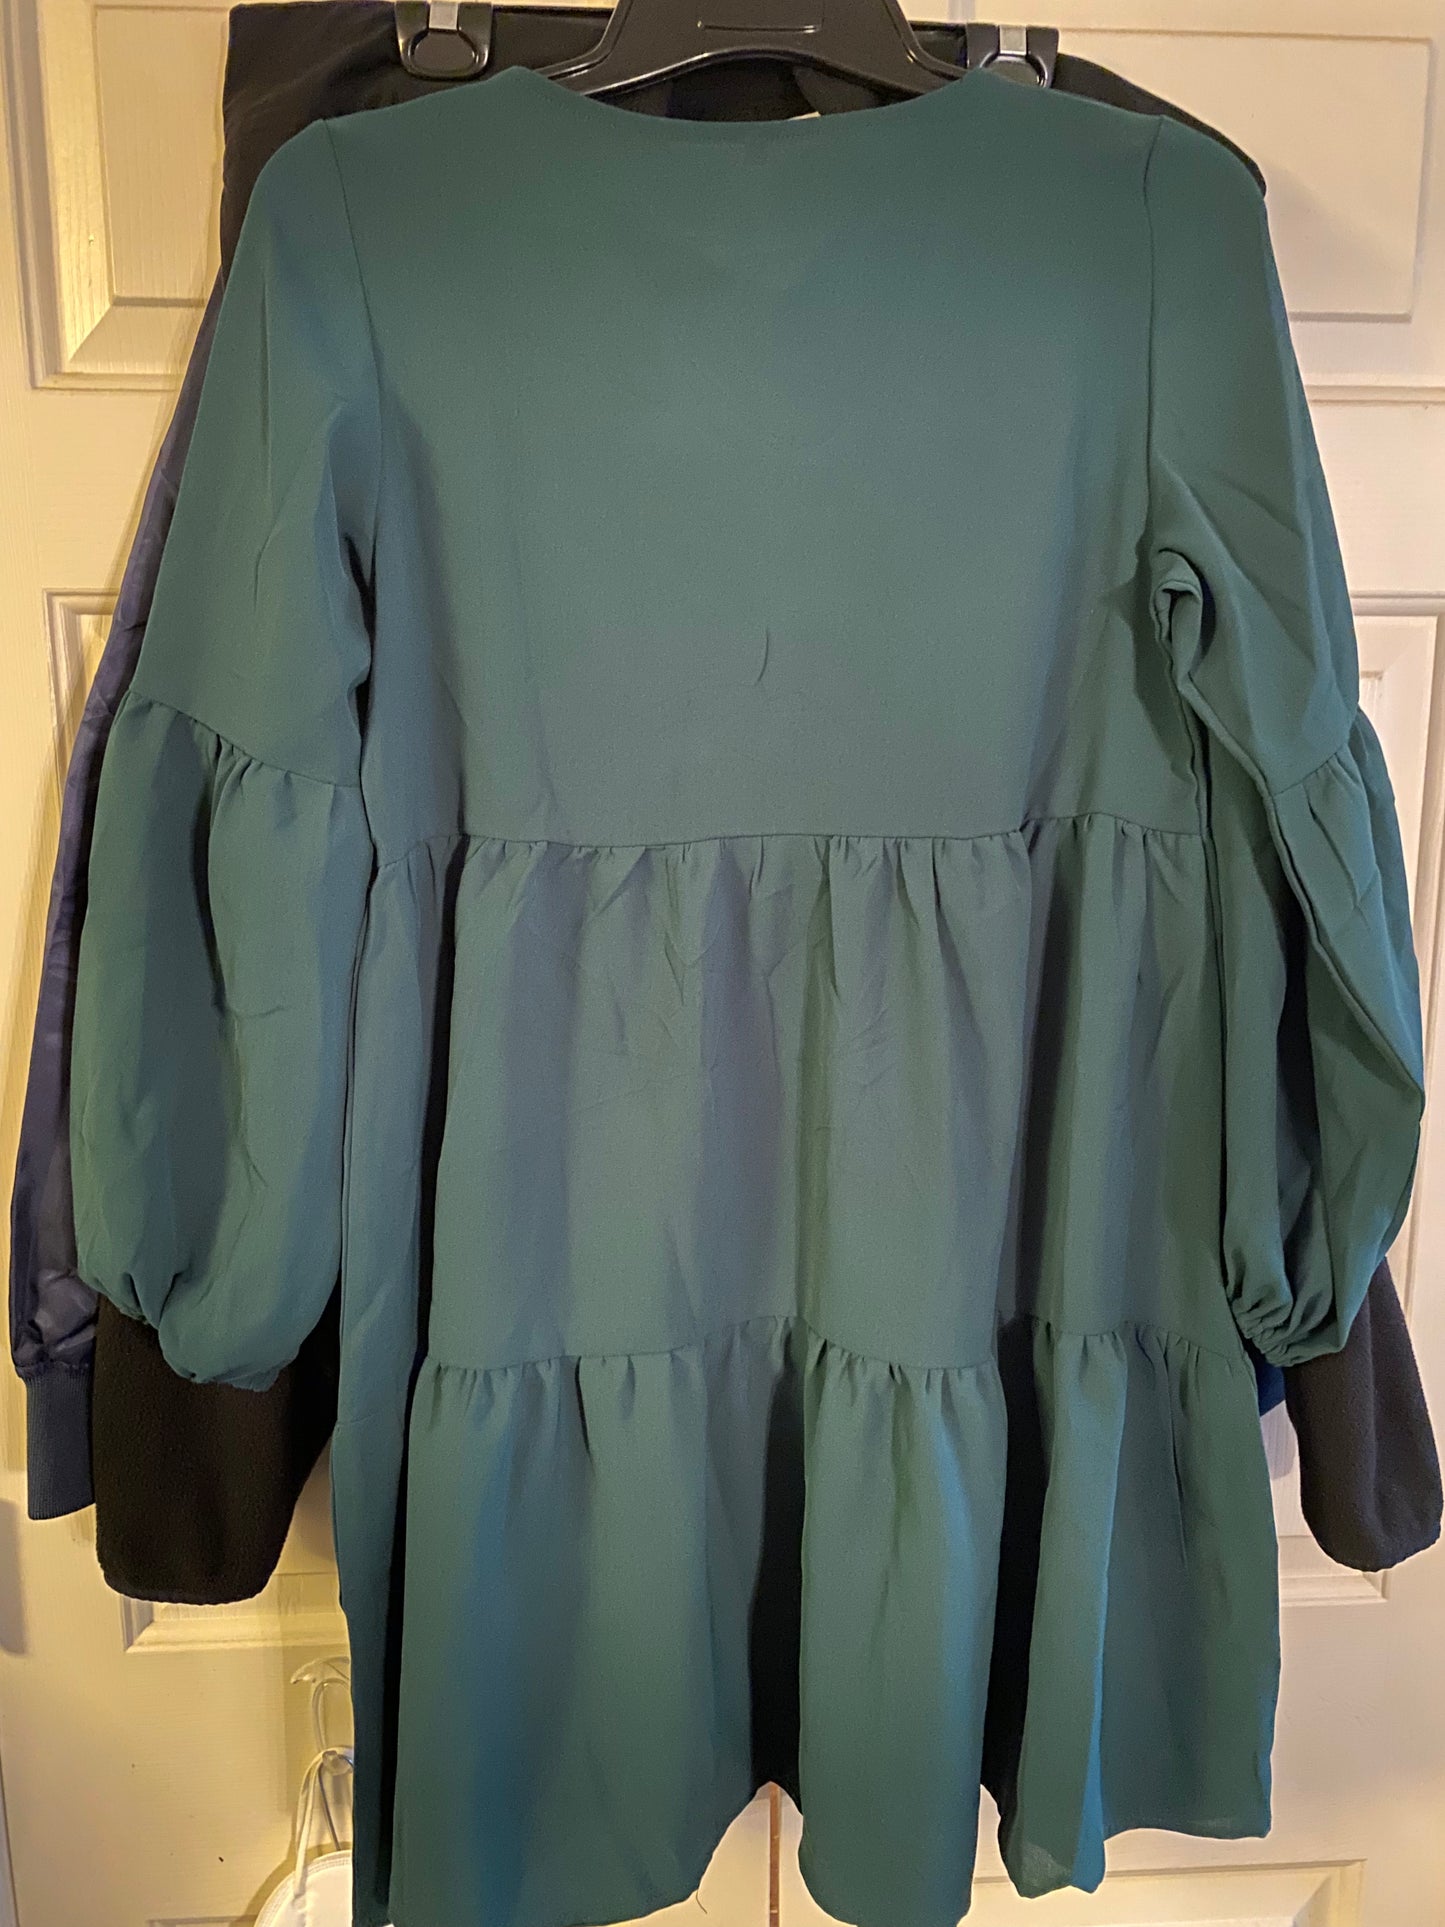 Women's Green Ruffled Dress V-neck Pull Over 3/4 length sleeves Size M Medium